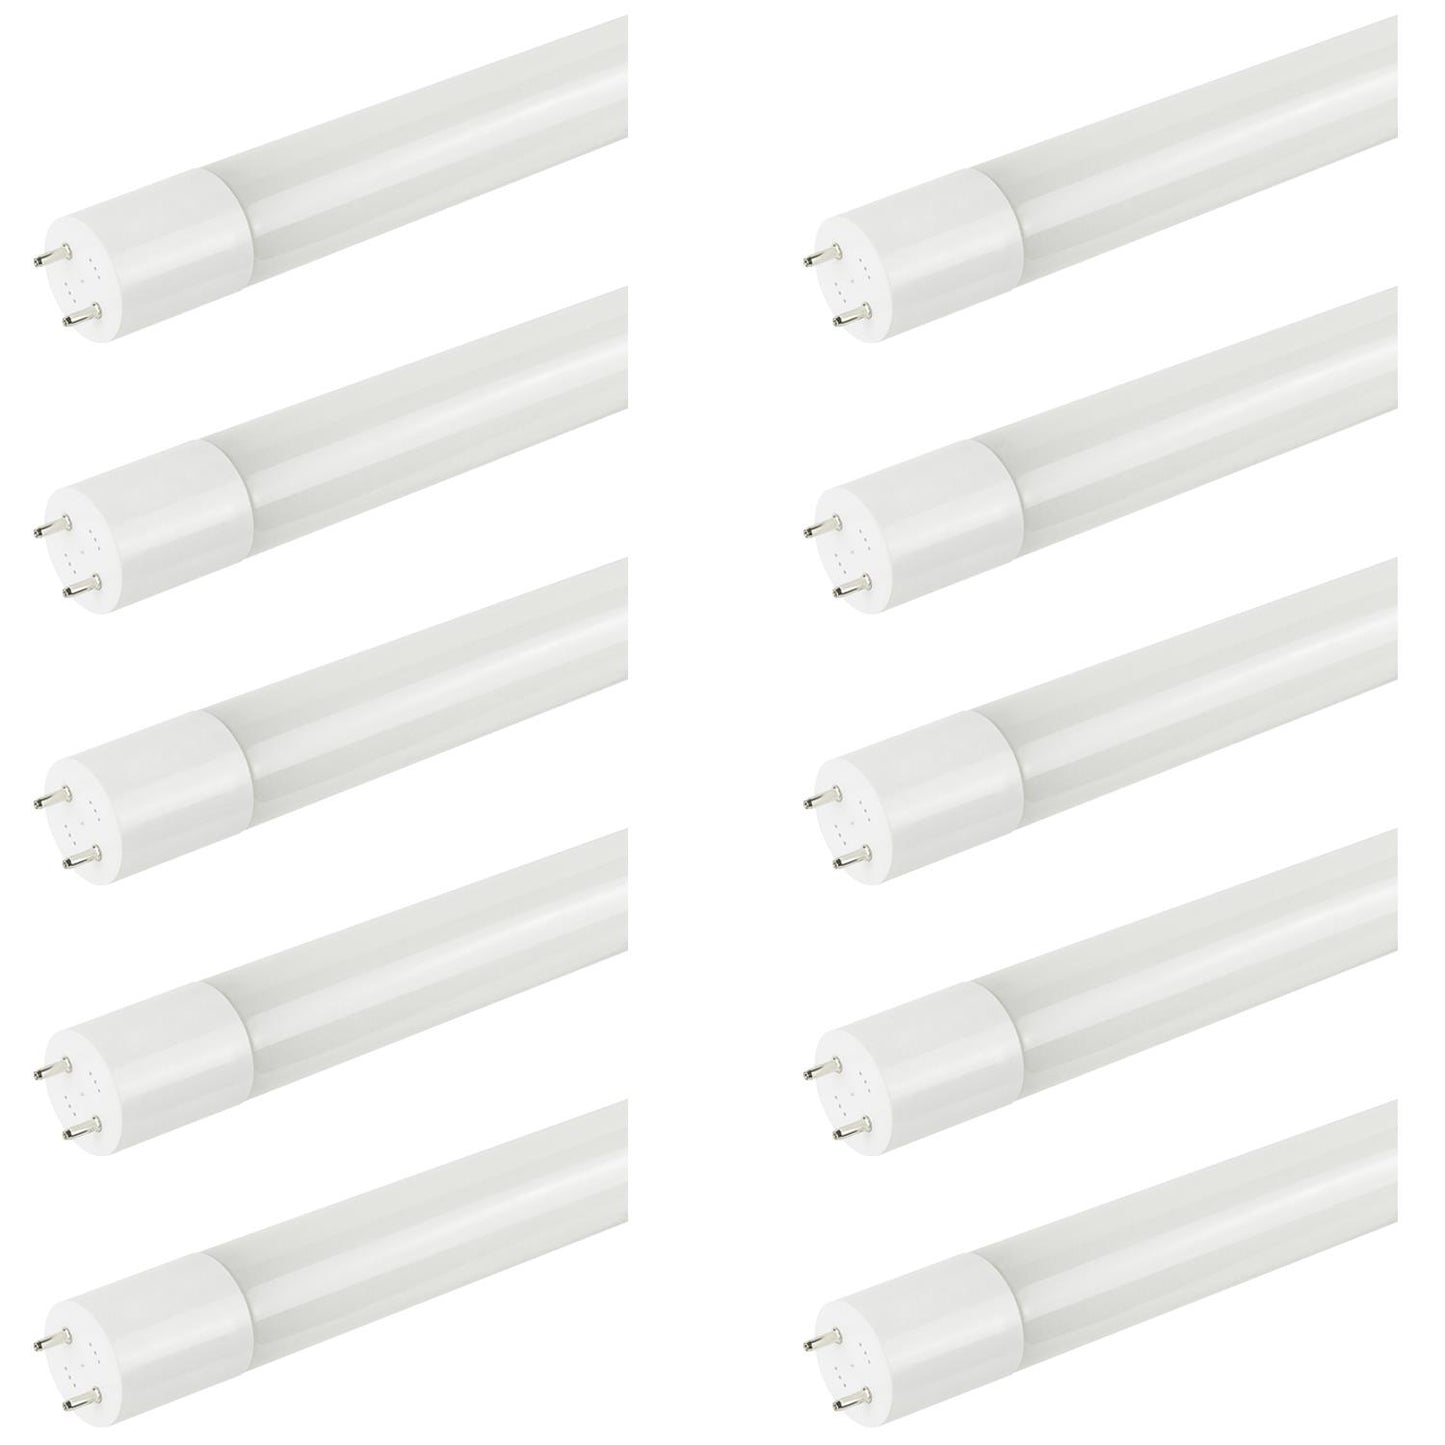 Sunlite T8/LED/4'/11.5W/IS/DLC/30K LED 11.5W 4 Foot Instant Start T8 Tube Light Fixtures, 3000K Warm White Light, G13 Base